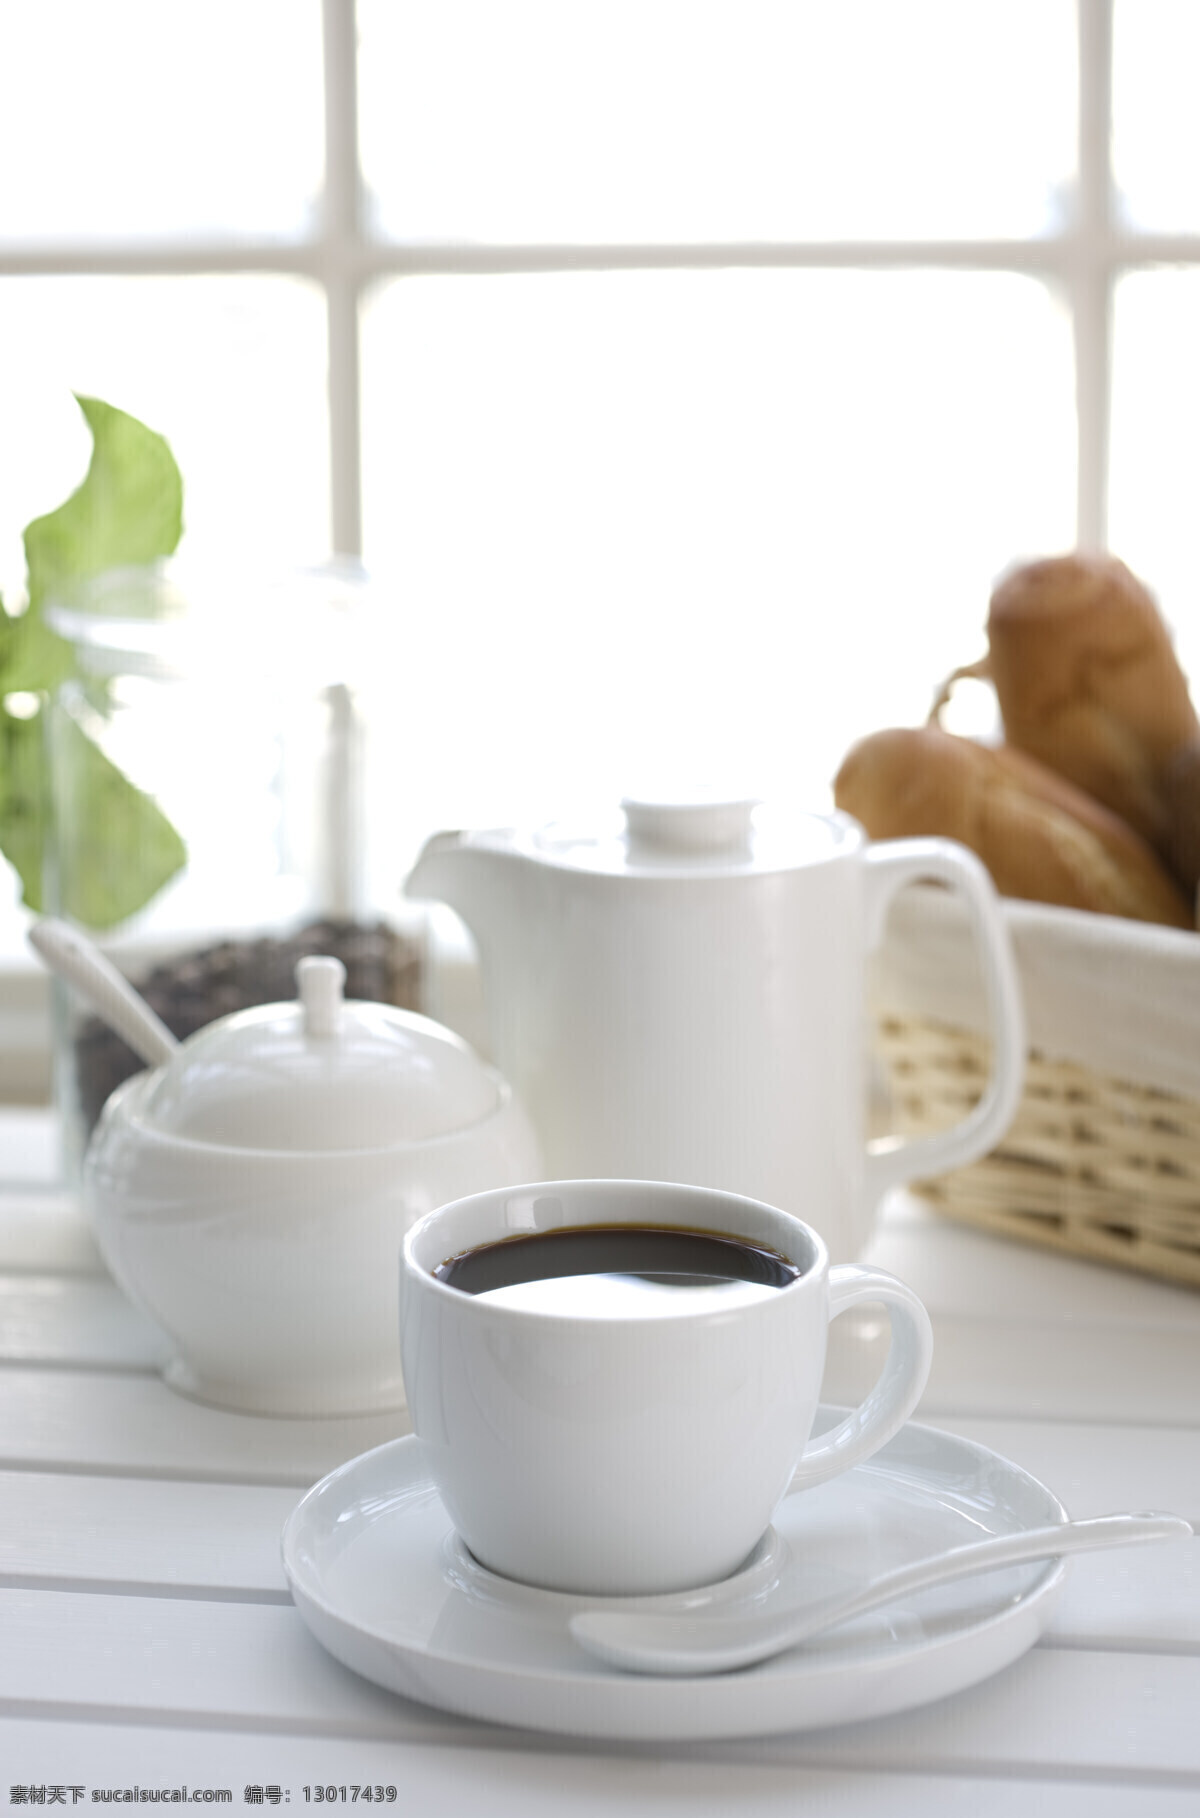 咖啡杯 咖啡壶 咖啡 咖啡勺 方糖碗 咖啡豆 白色瓷盘 篮子 面包 休闲 品味生活 高清图片 咖啡图片 餐饮美食